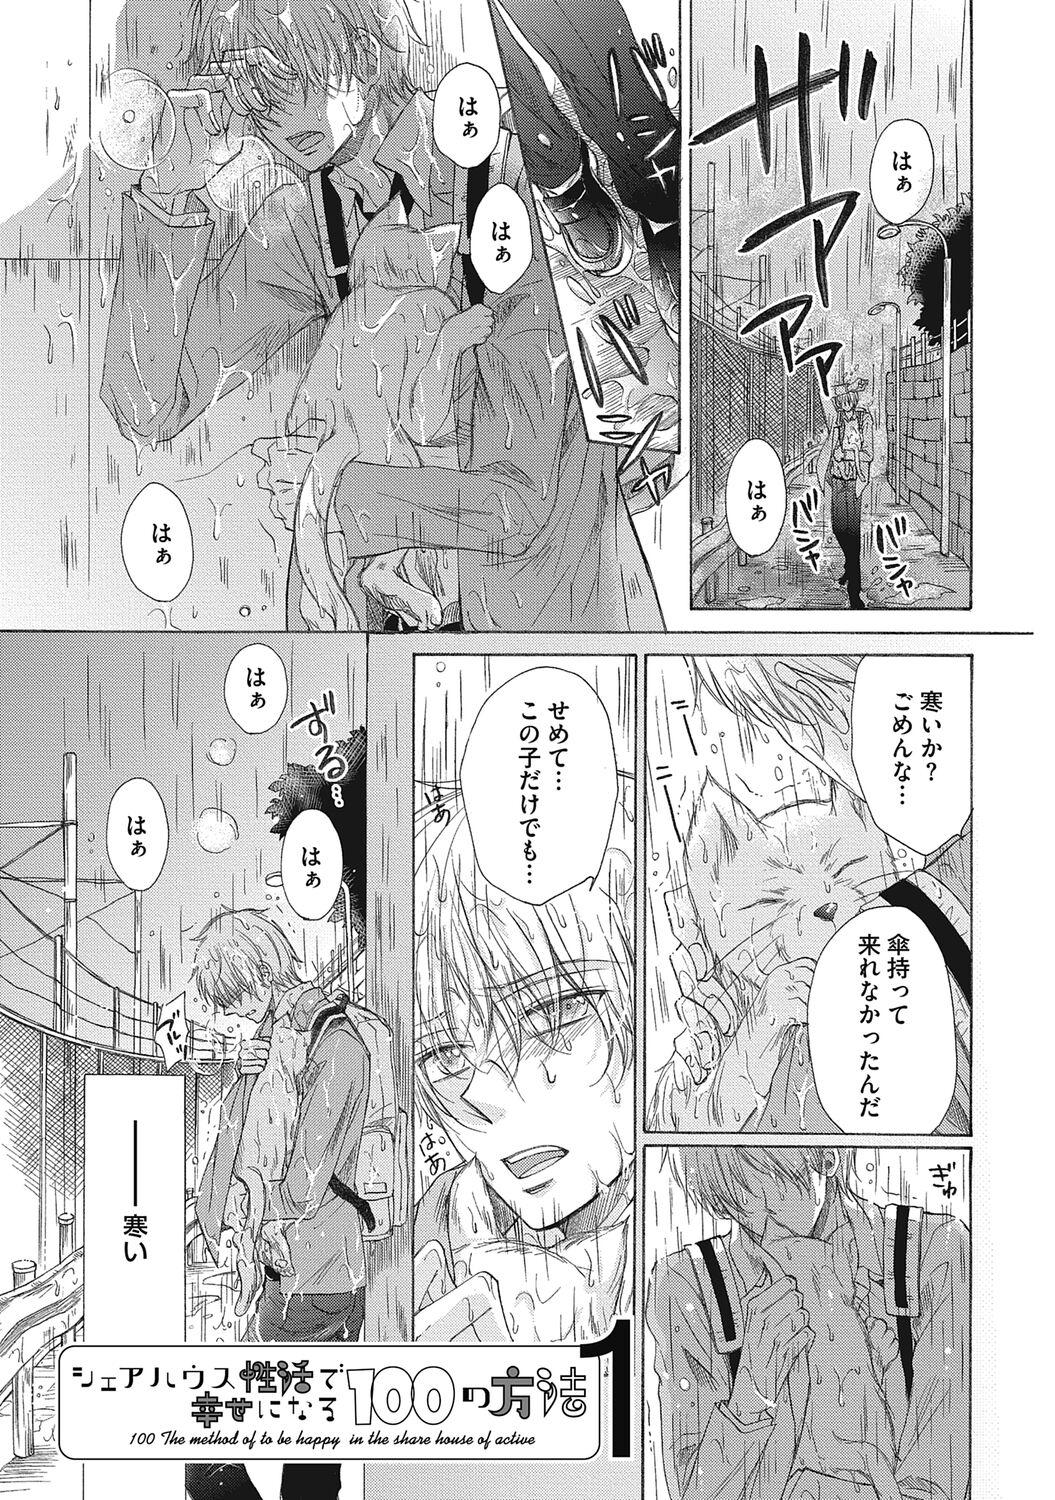 Toes Share House Seikatsu de Shiawase ni Naru 100 no Houhou Massage Creep - Page 5